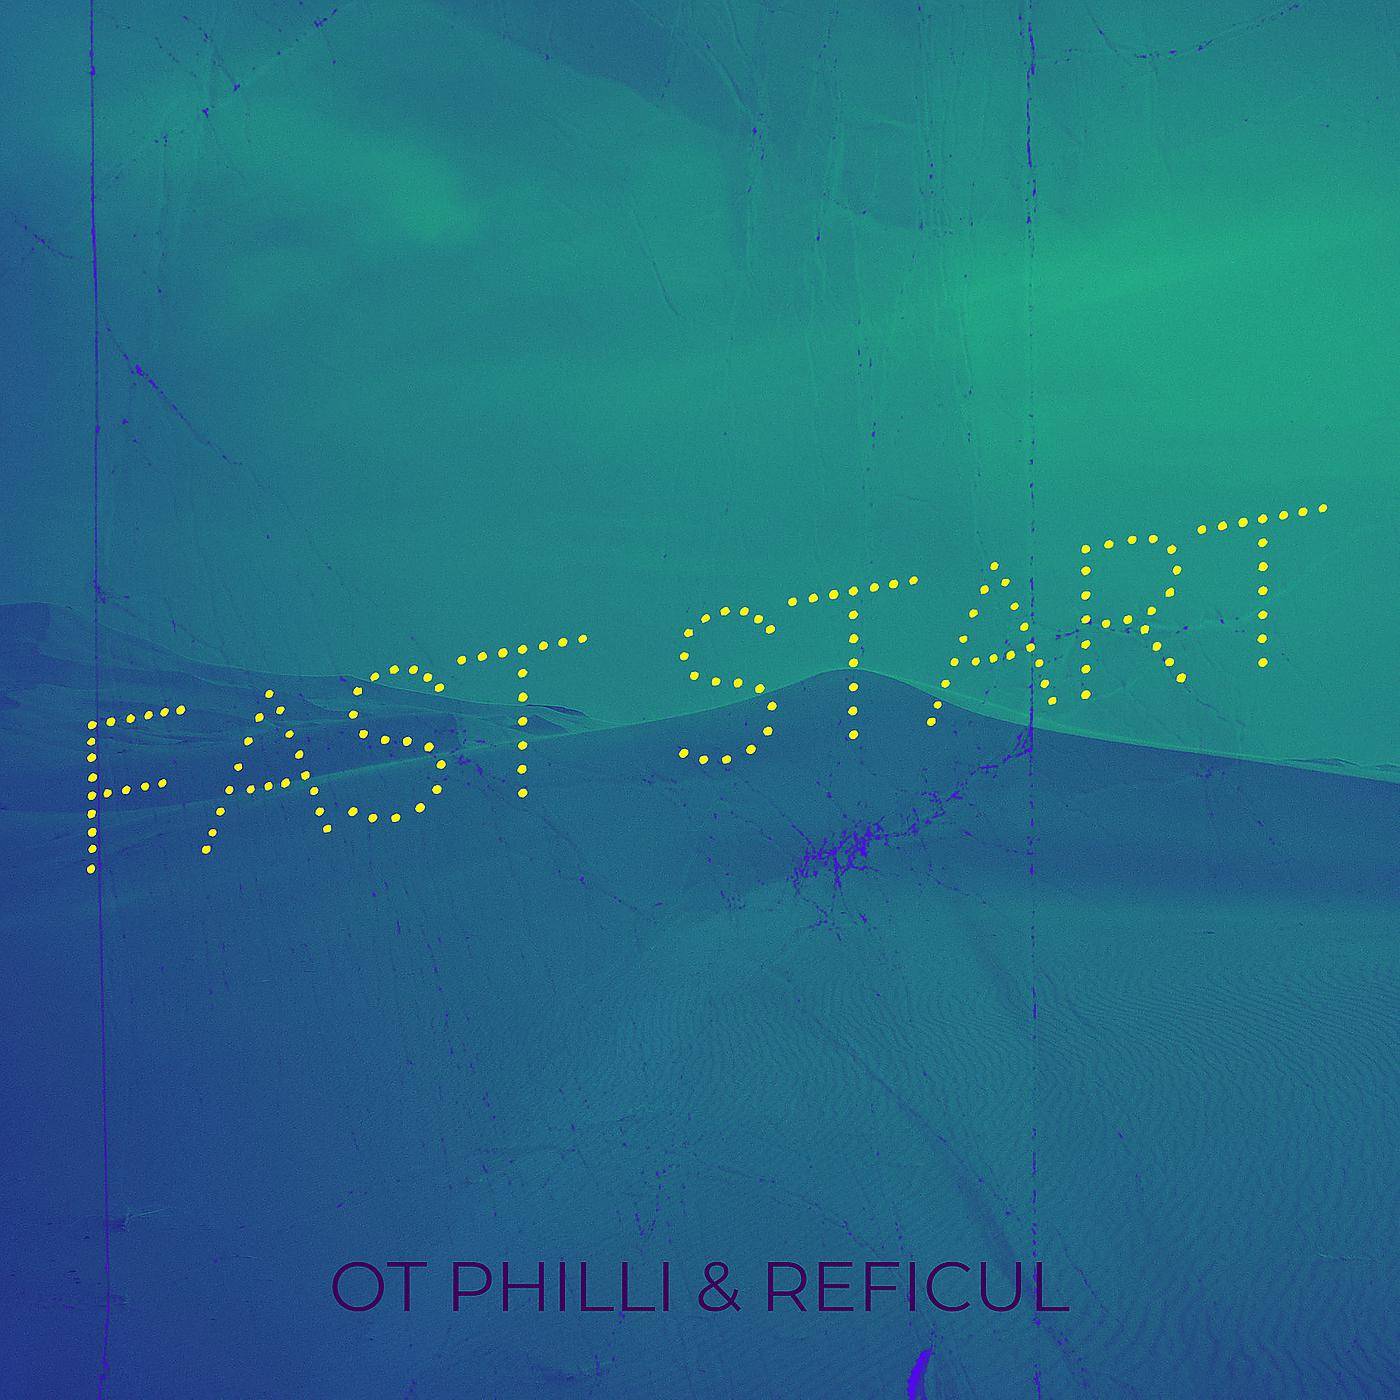 Постер альбома Fast Start